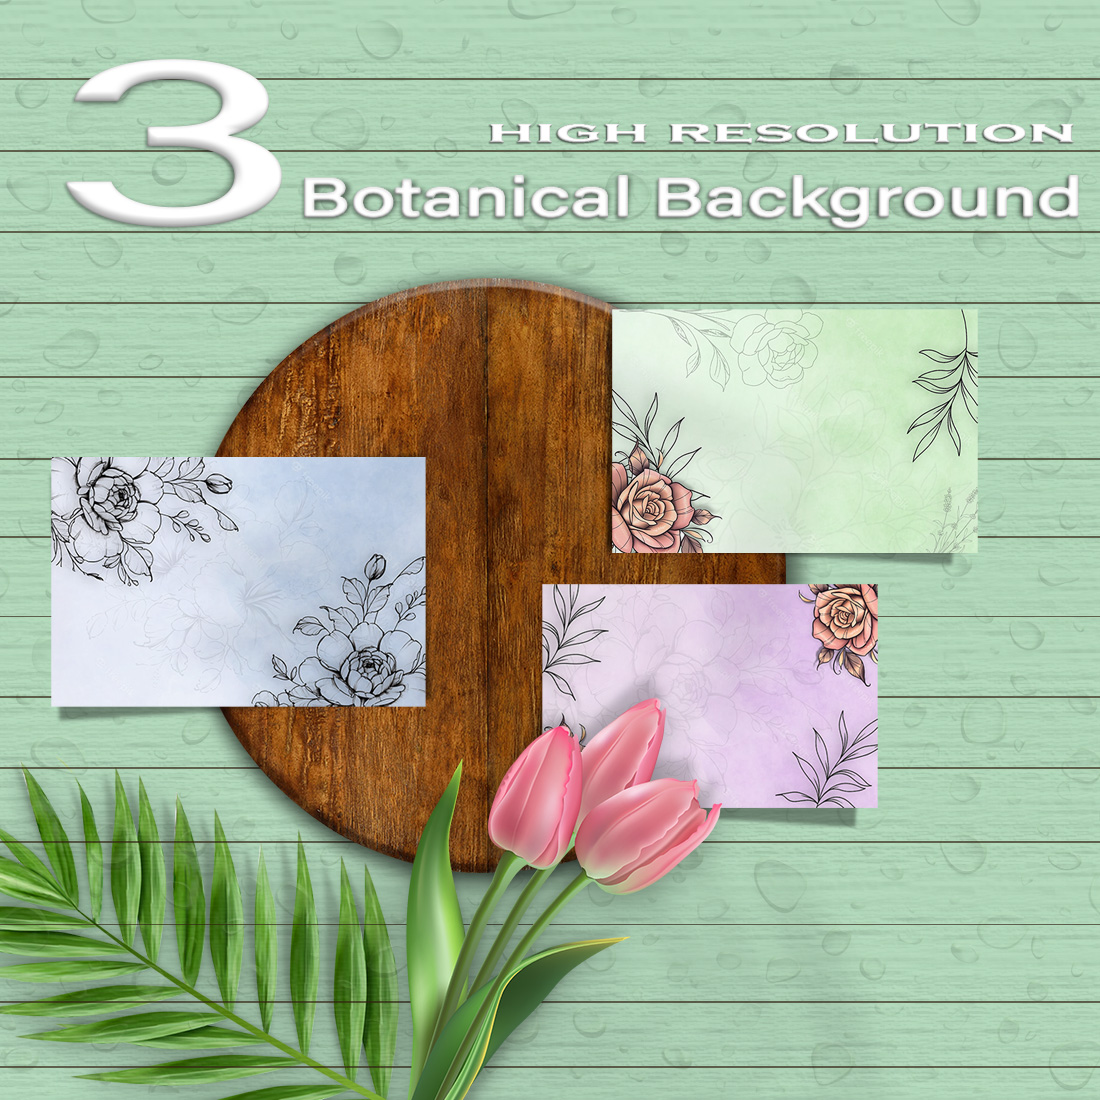 3 Beautiful Botanical Background cover image.